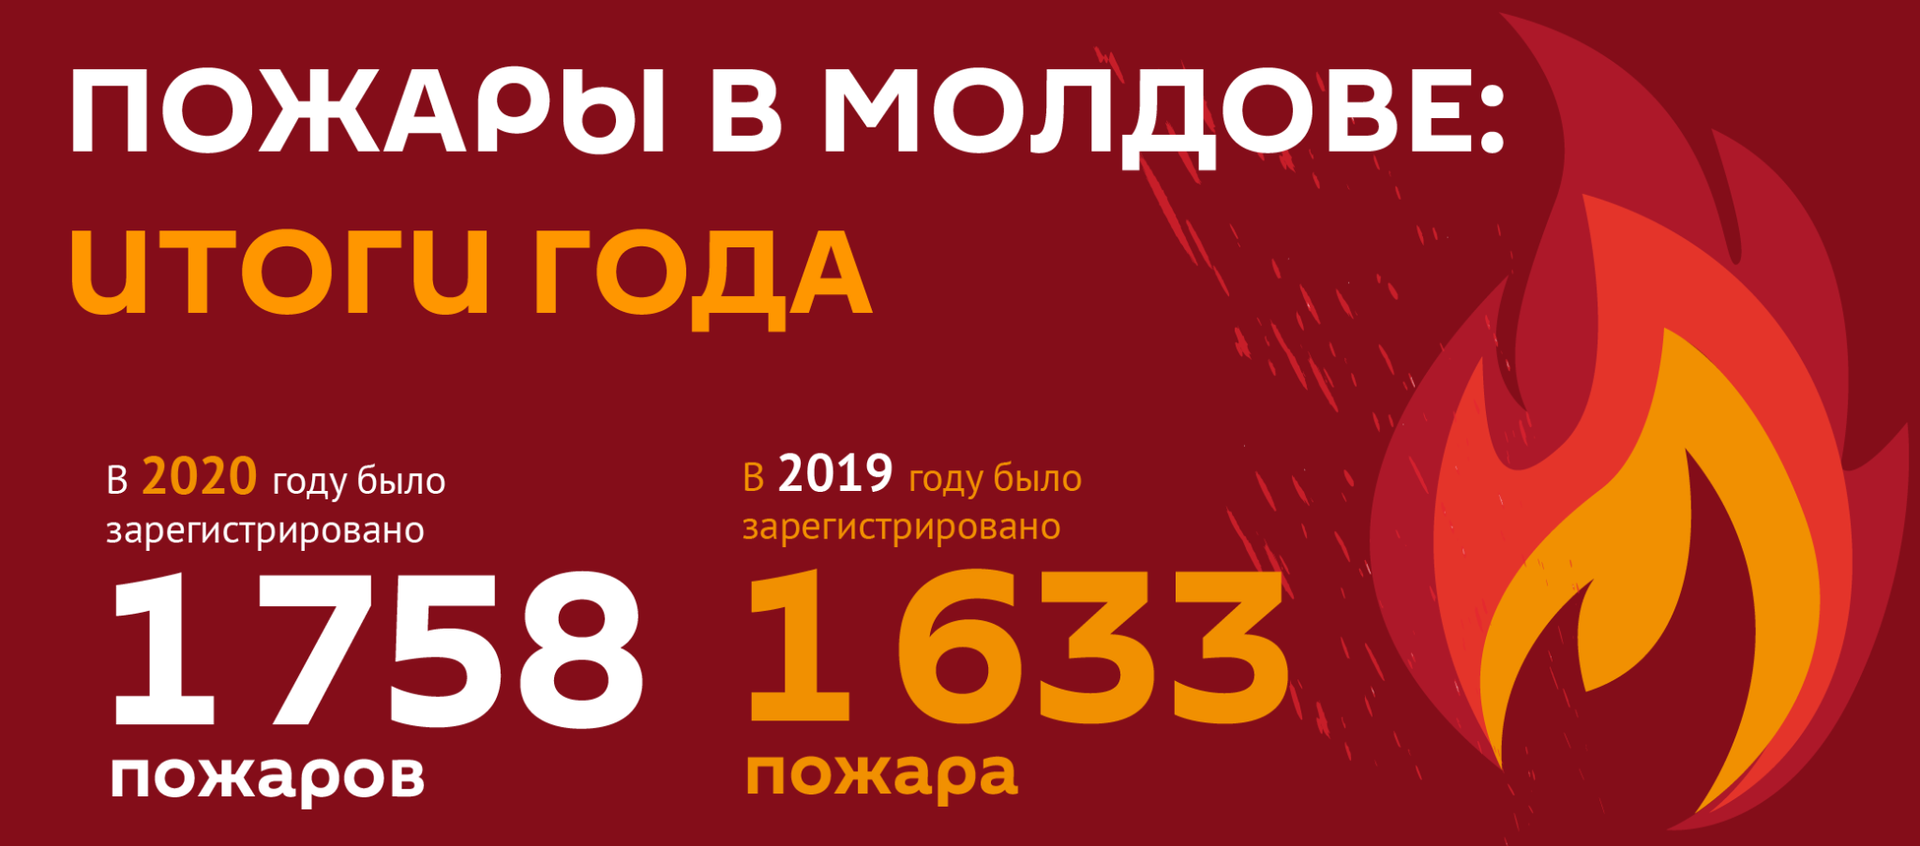 Пожары в Молдове: итоги года - Sputnik Молдова, 1920, 02.02.2021